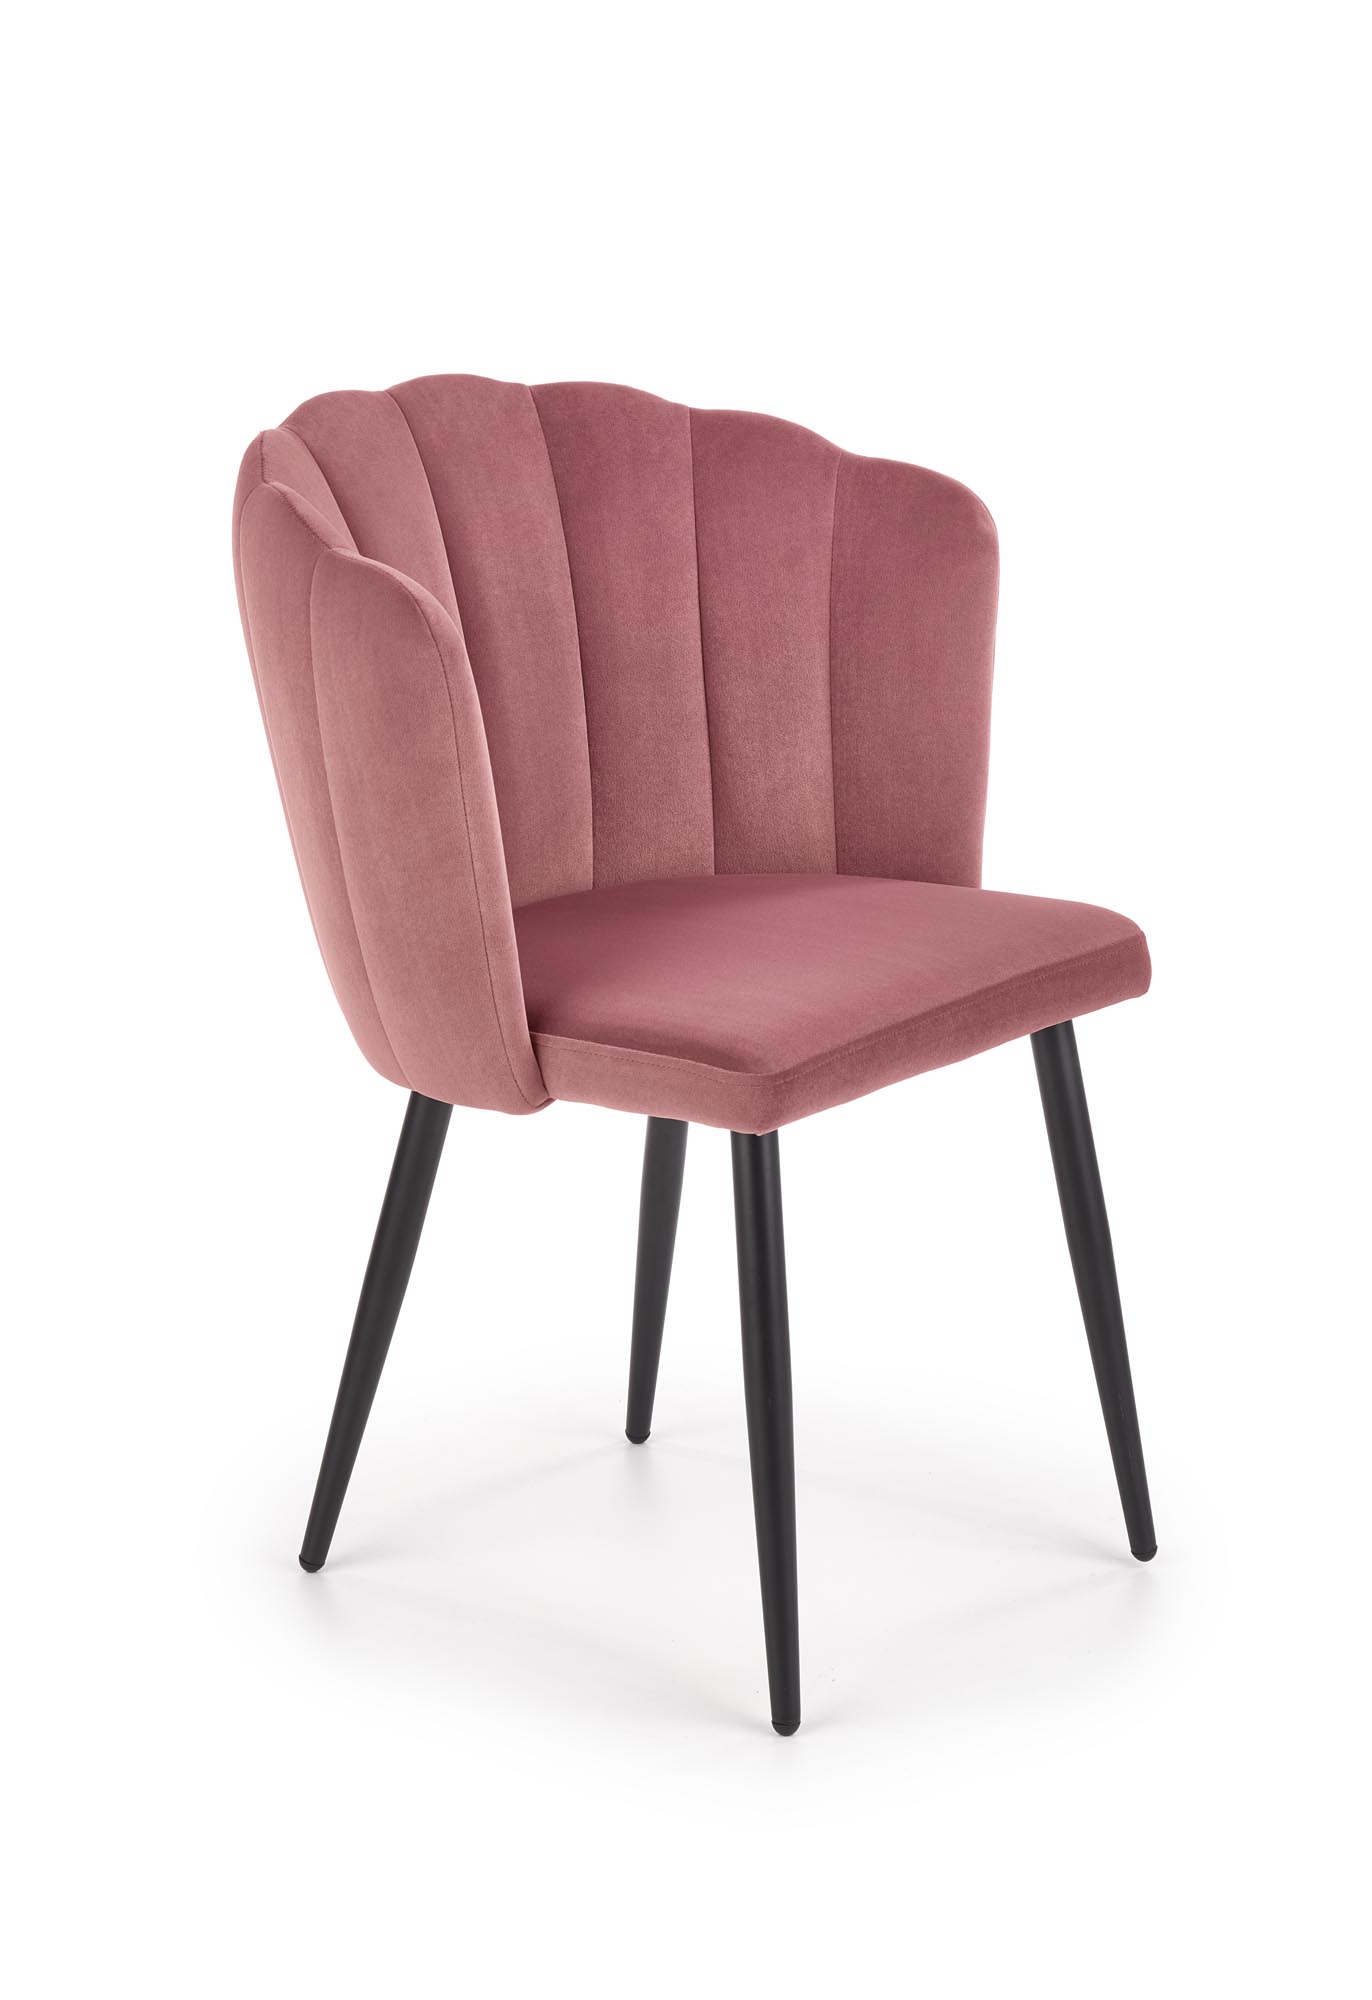 K386 krzesło różowy  k386 krzesło różowy